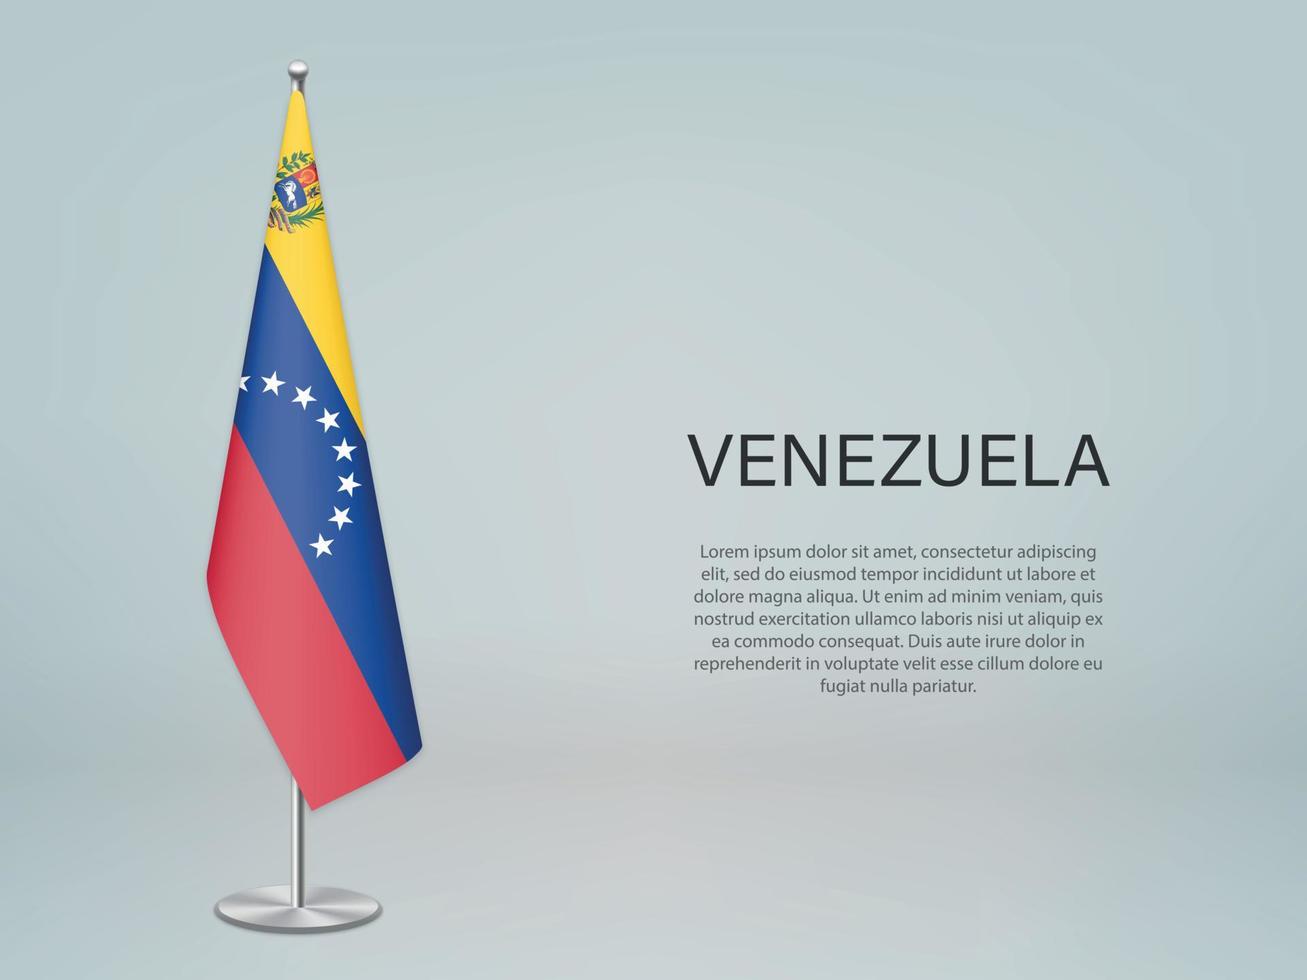 venezuela colgando la bandera en el stand. plantilla para banner de conferencia vector